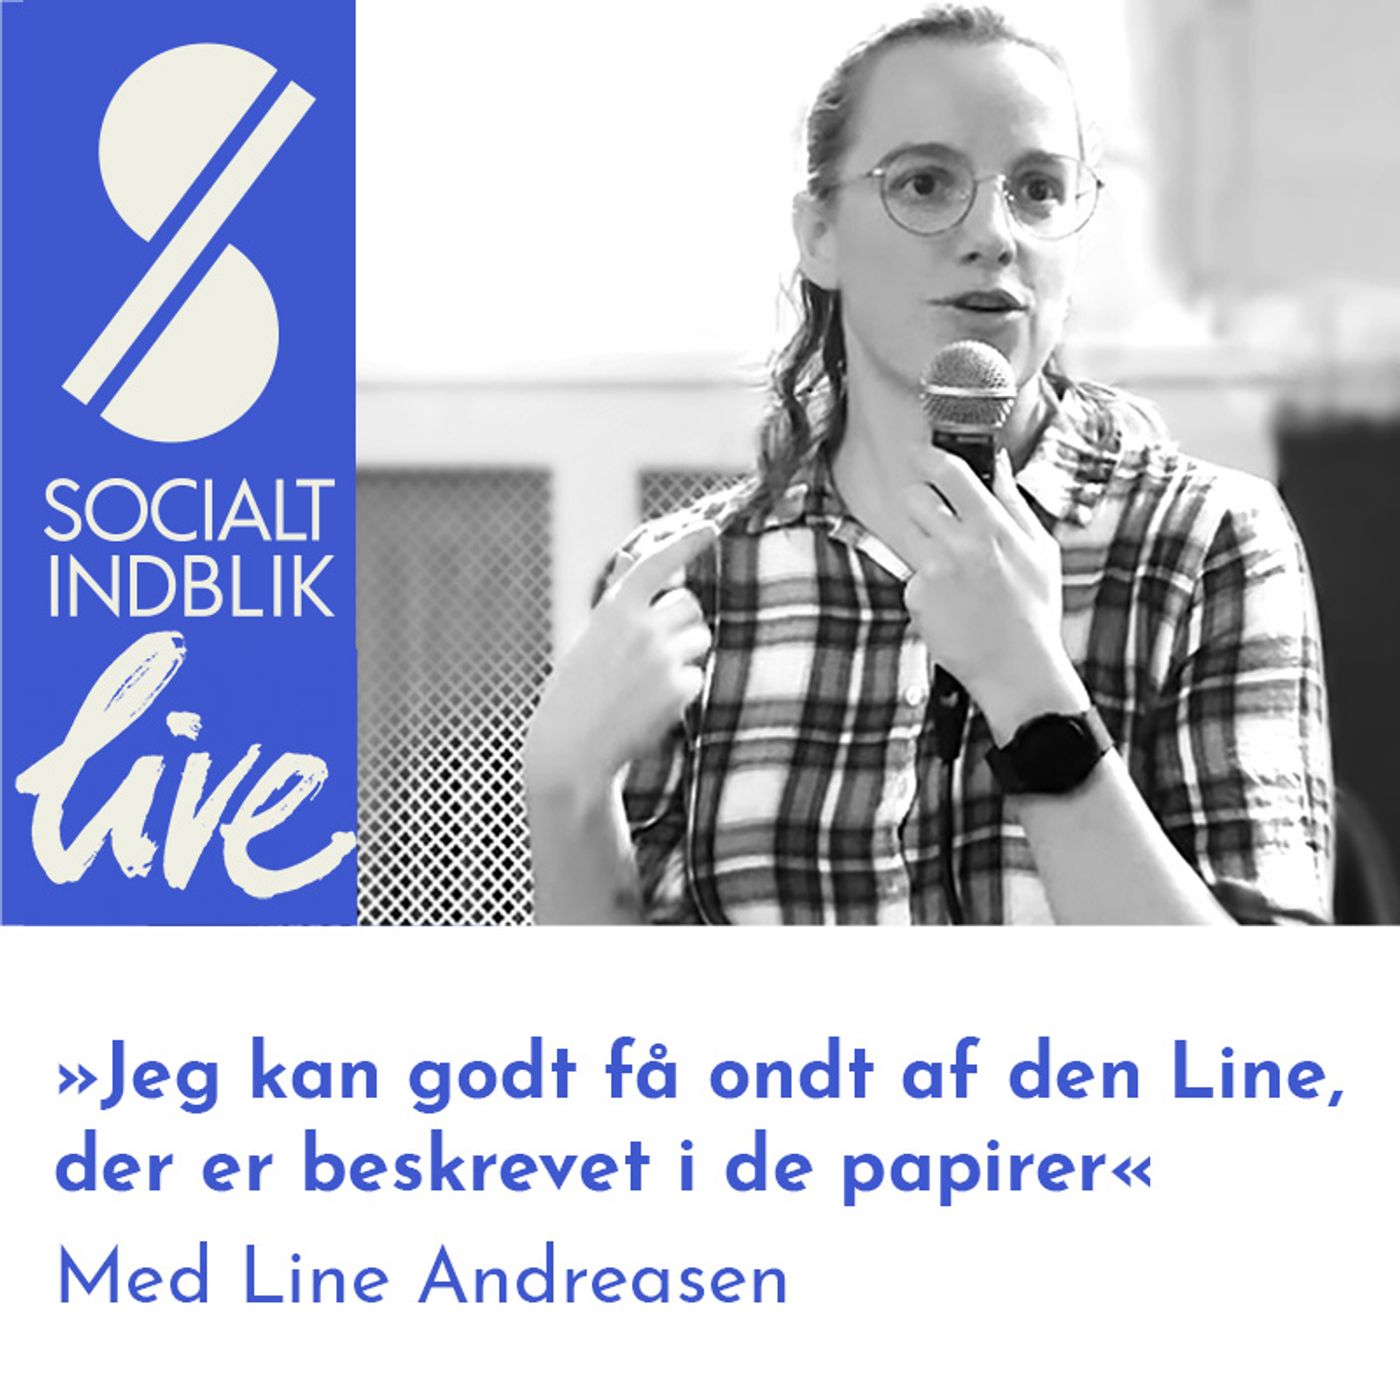 ”Jeg kan godt få ondt af den Line, der er beskrevet i de papirer.” Interview med Line Andreasen til Socialt Indblik Live